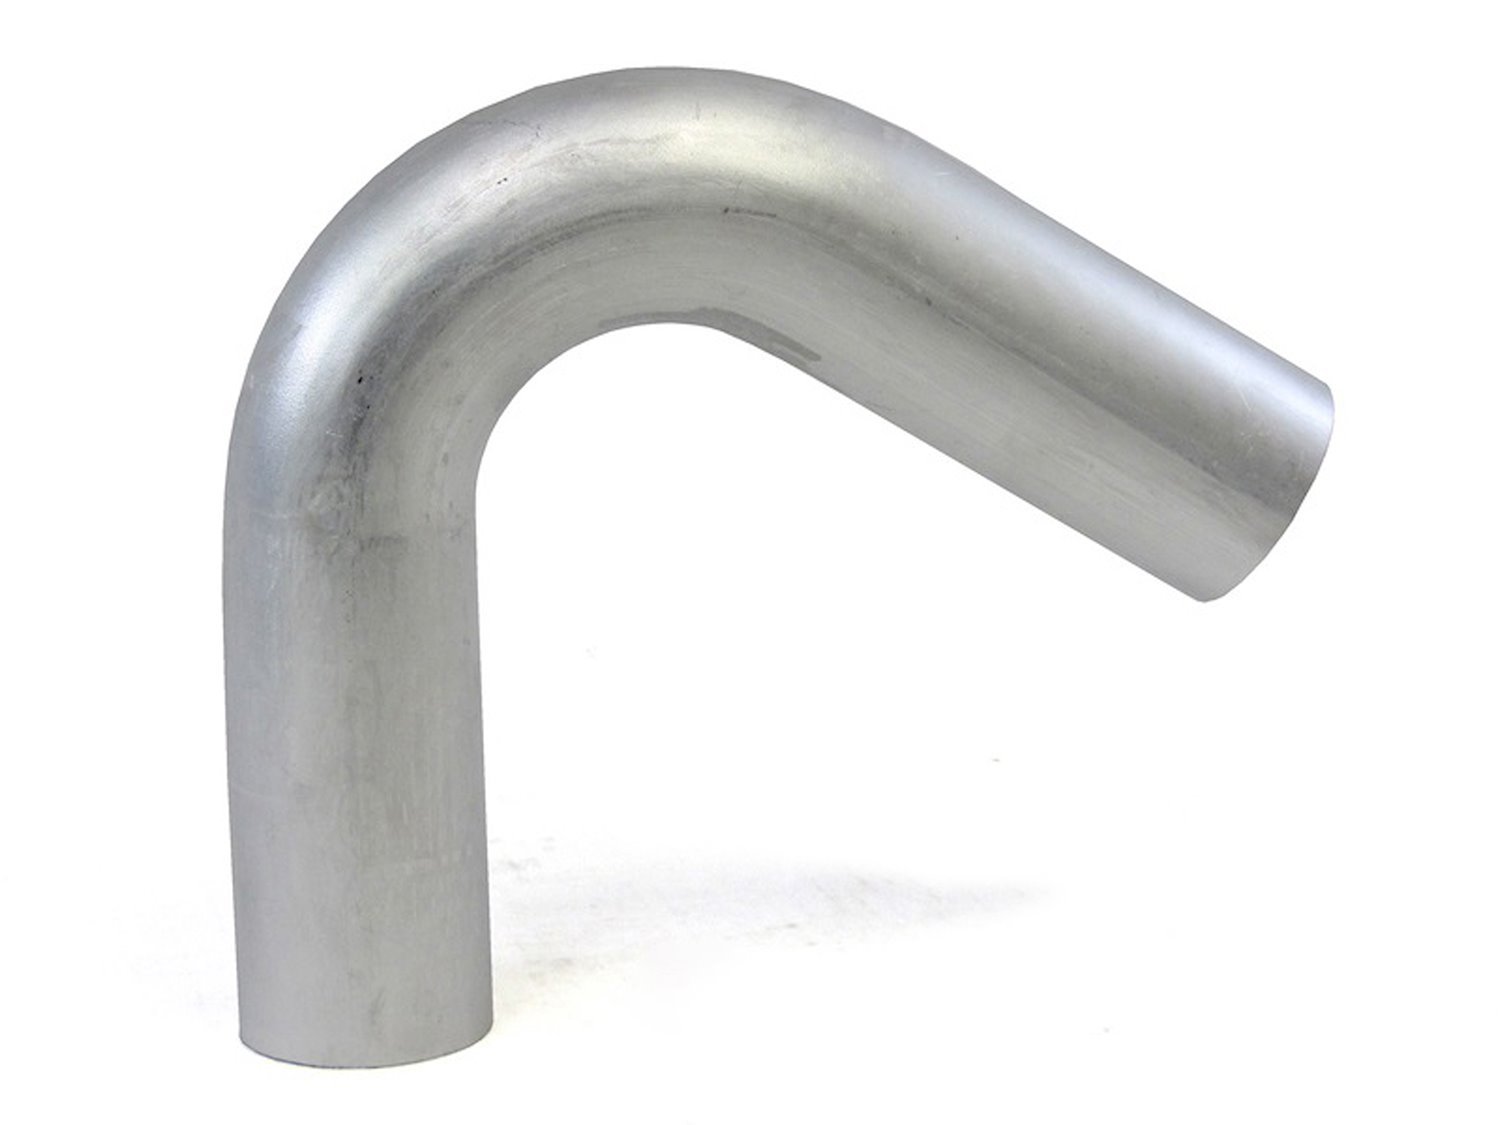 AT120-150-CLR-2 Aluminum Elbow Tube, 6061 Aluminum, 120-Degree Bend Elbow Tubing, 1-1/2 in. OD, Tight Radius, 2 in. CLR